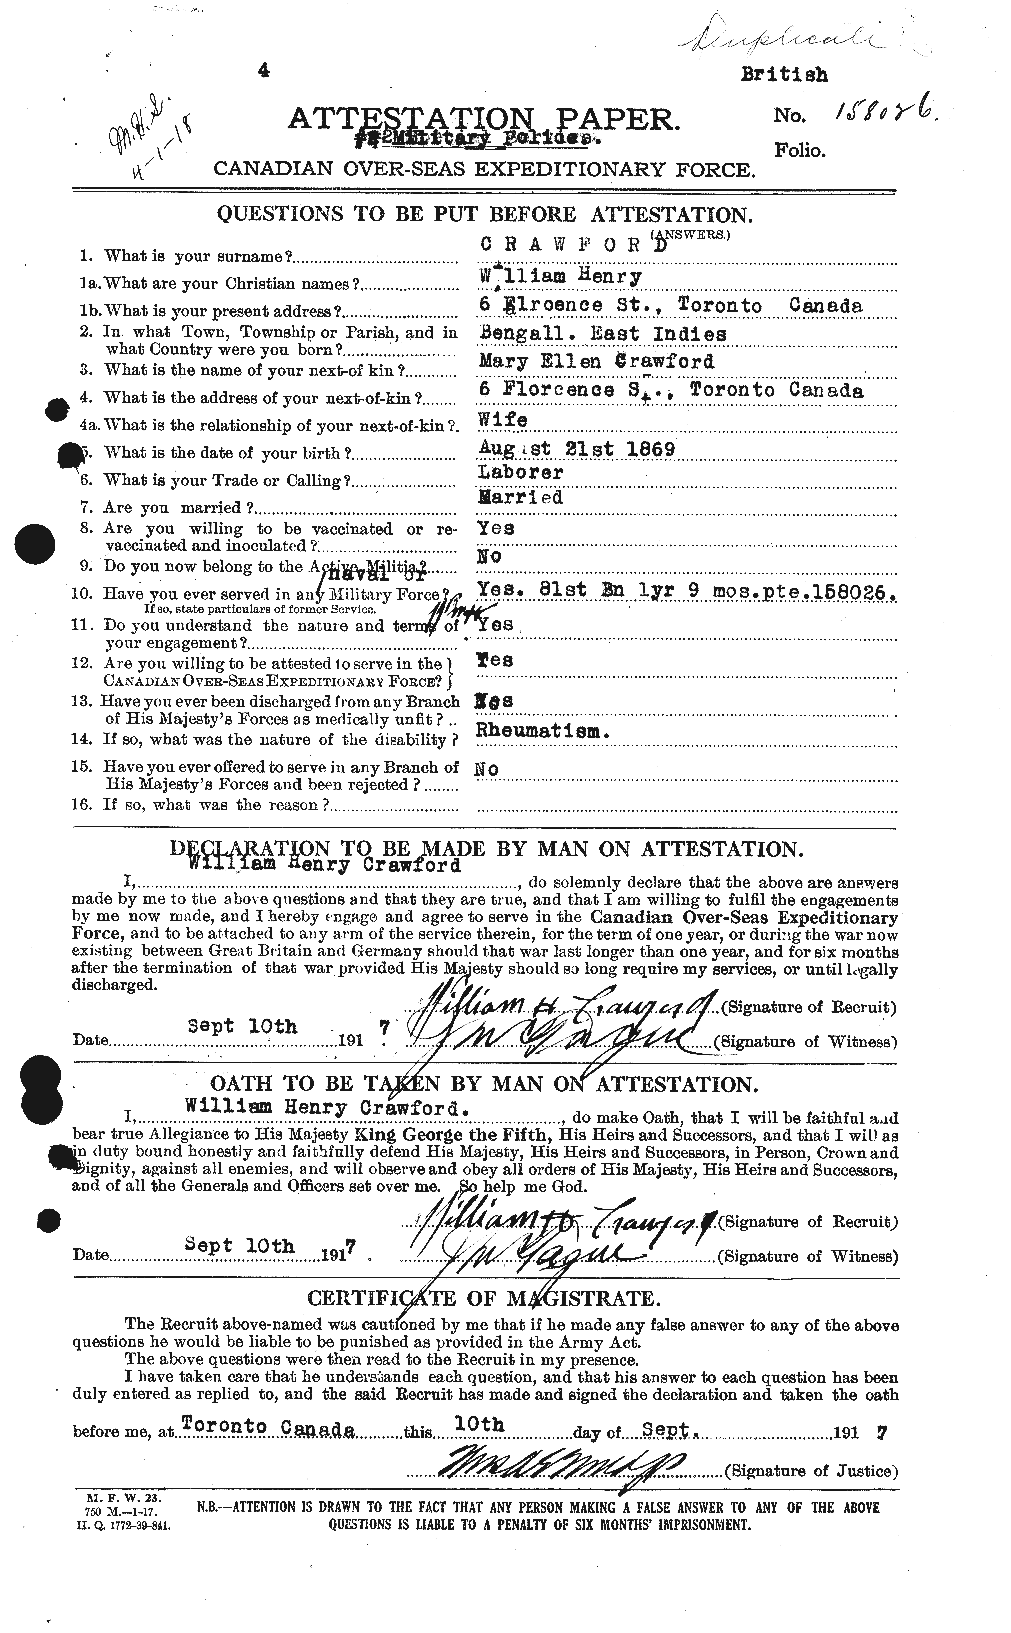 Dossiers du Personnel de la Première Guerre mondiale - CEC 061139a